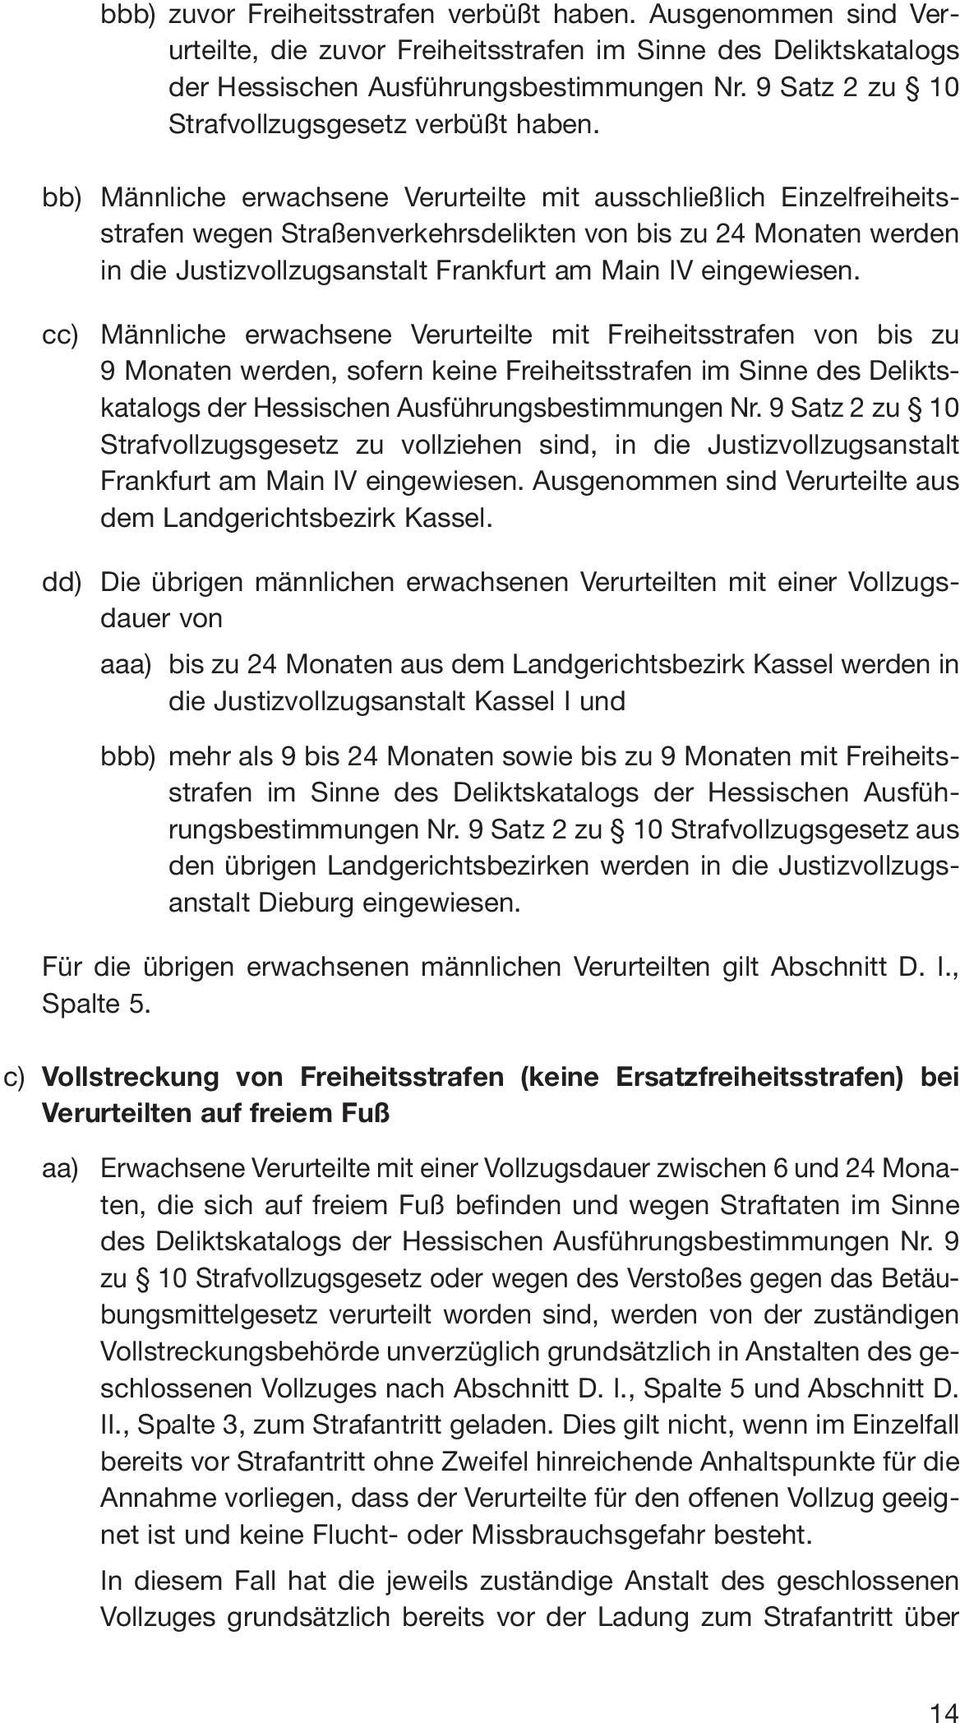 bb) Männliche erwachsene Verurteilte mit ausschließlich Einzelfreiheitsstrafen wegen Straßenverkehrsdelikten von bis zu 24 Monaten werden in die Justizvollzugsanstalt Frankfurt am Main IV eingewiesen.